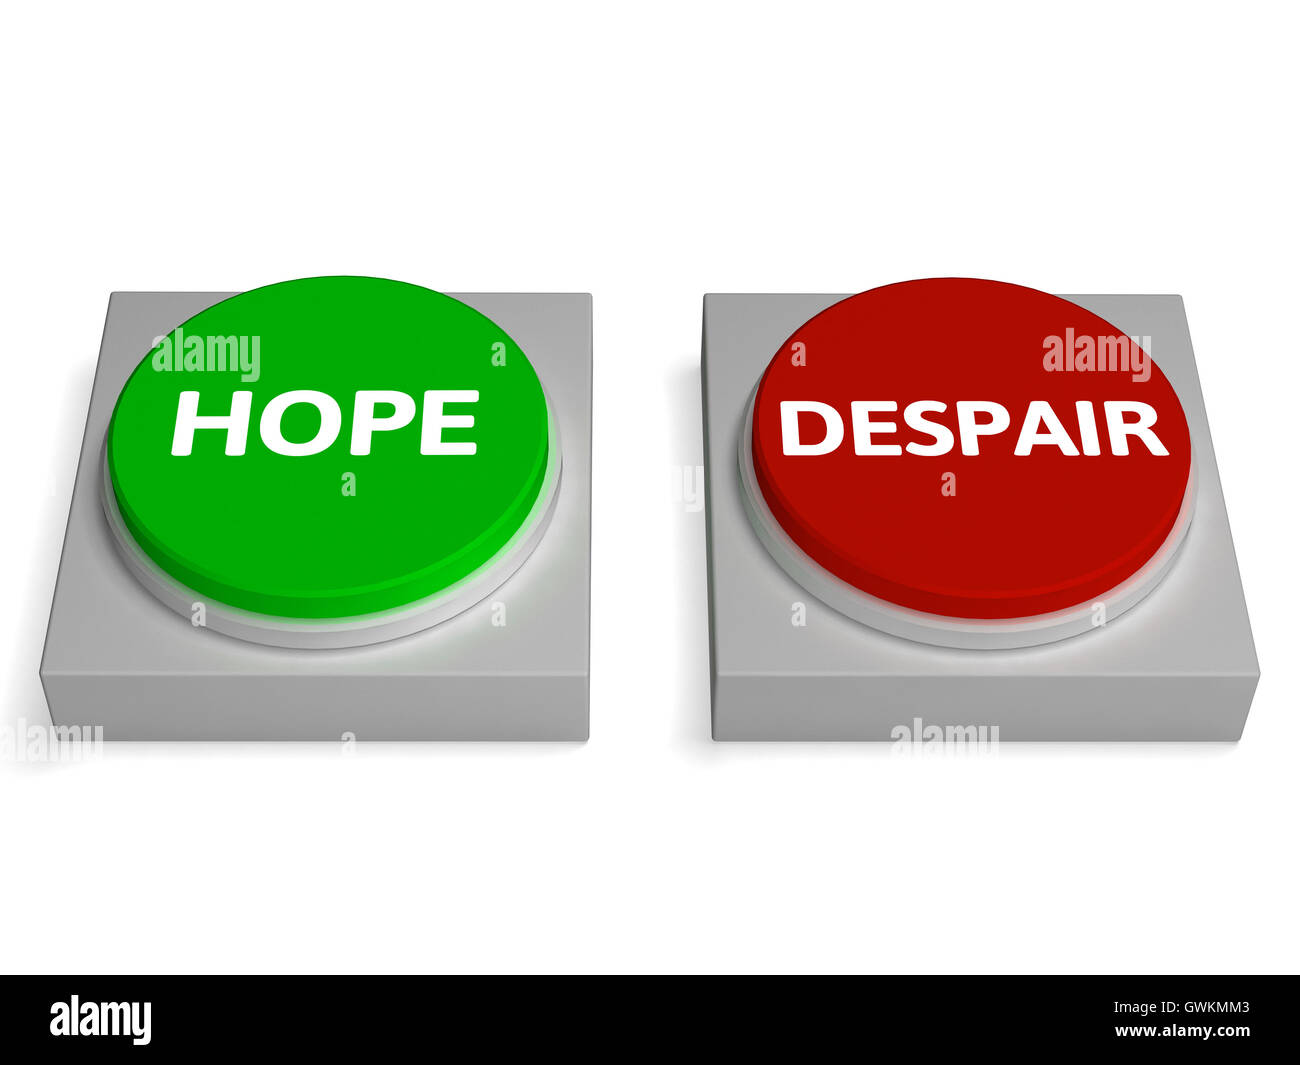 L'espoir au désespoir boutons indiquent le désespoir ou espoir Banque D'Images